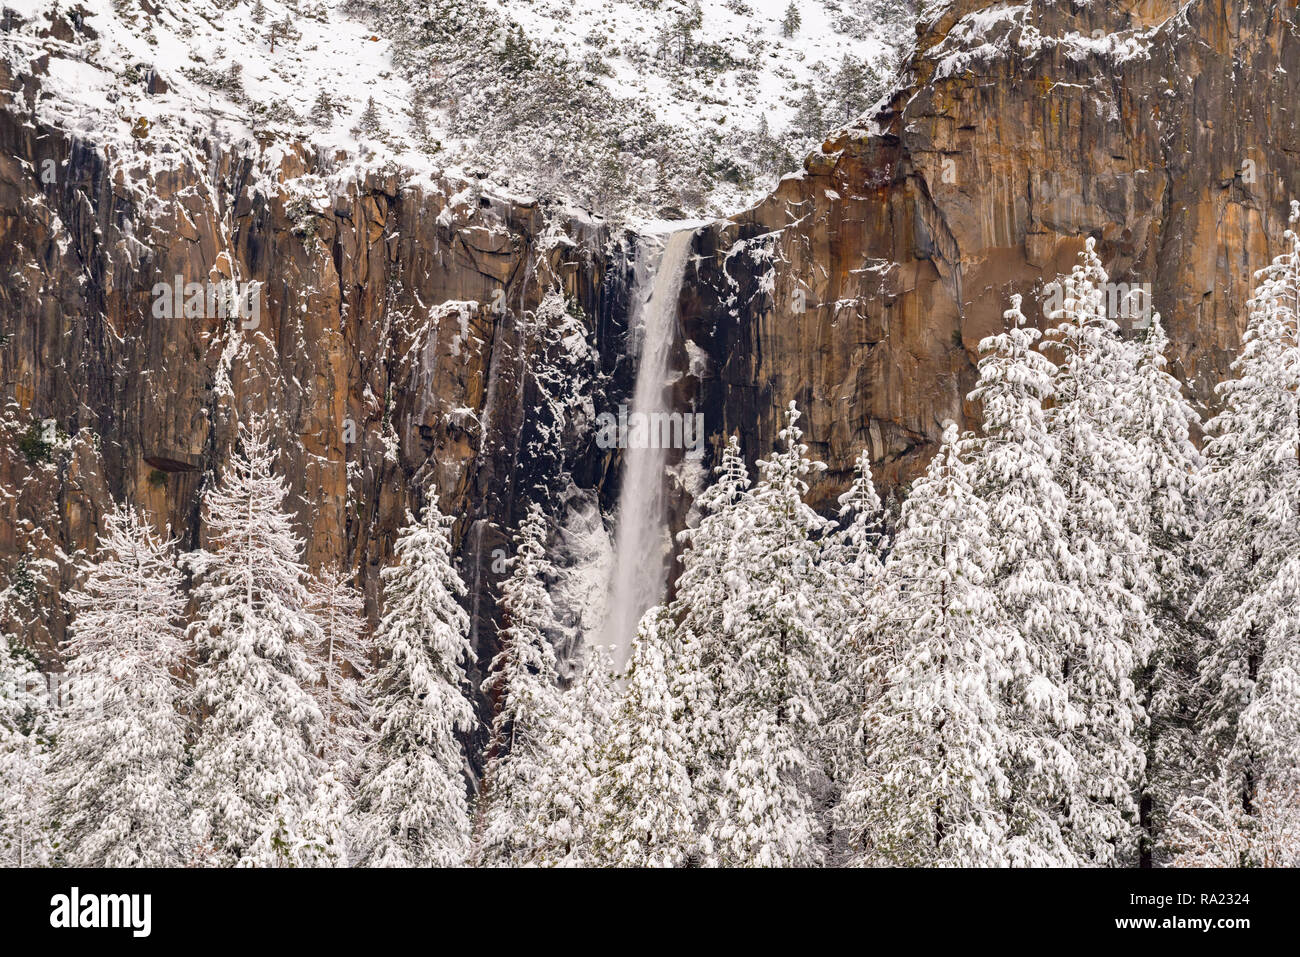 25 gen 2017 Yosemite Valley negli Stati Uniti: dopo la siccità Ultime nevicate massicce, Snow capped Cathedral Rocks e Bridalveil Falls forniscono una maestosa vista. Foto Stock